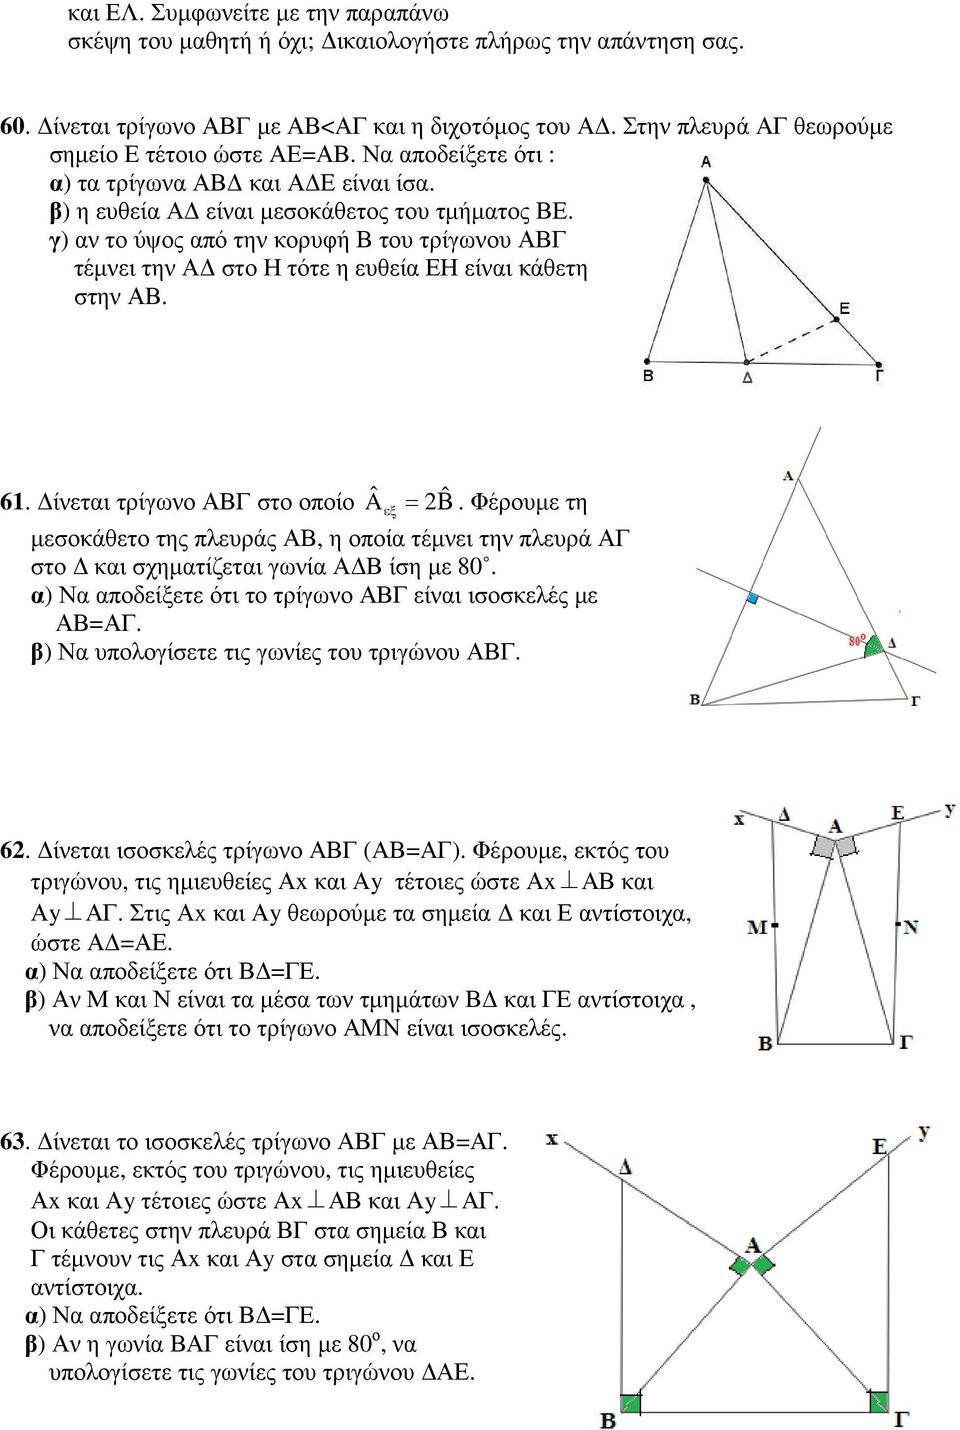 γ) αν το ύψος από την κορυφή Β του τρίγωνου ΑΒΓ τέµνει την Α στο Η τότε η ευθεία ΕΗ είναι κάθετη στην ΑΒ. 61. ίνεται τρίγωνο ΑΒΓ στο οποίο A ˆ = 2Β ˆ.